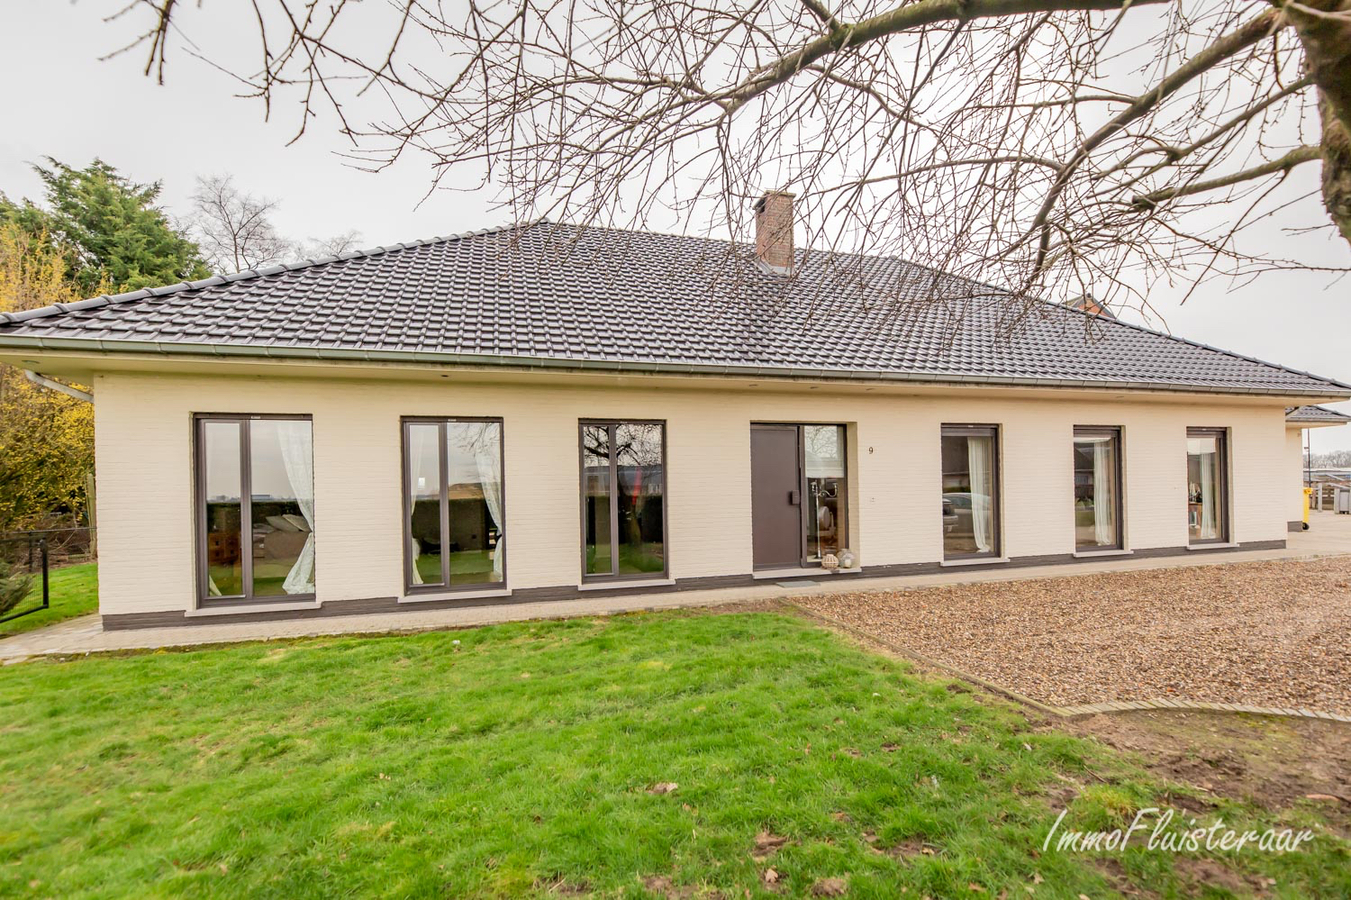 Property sold in Rijkevorsel